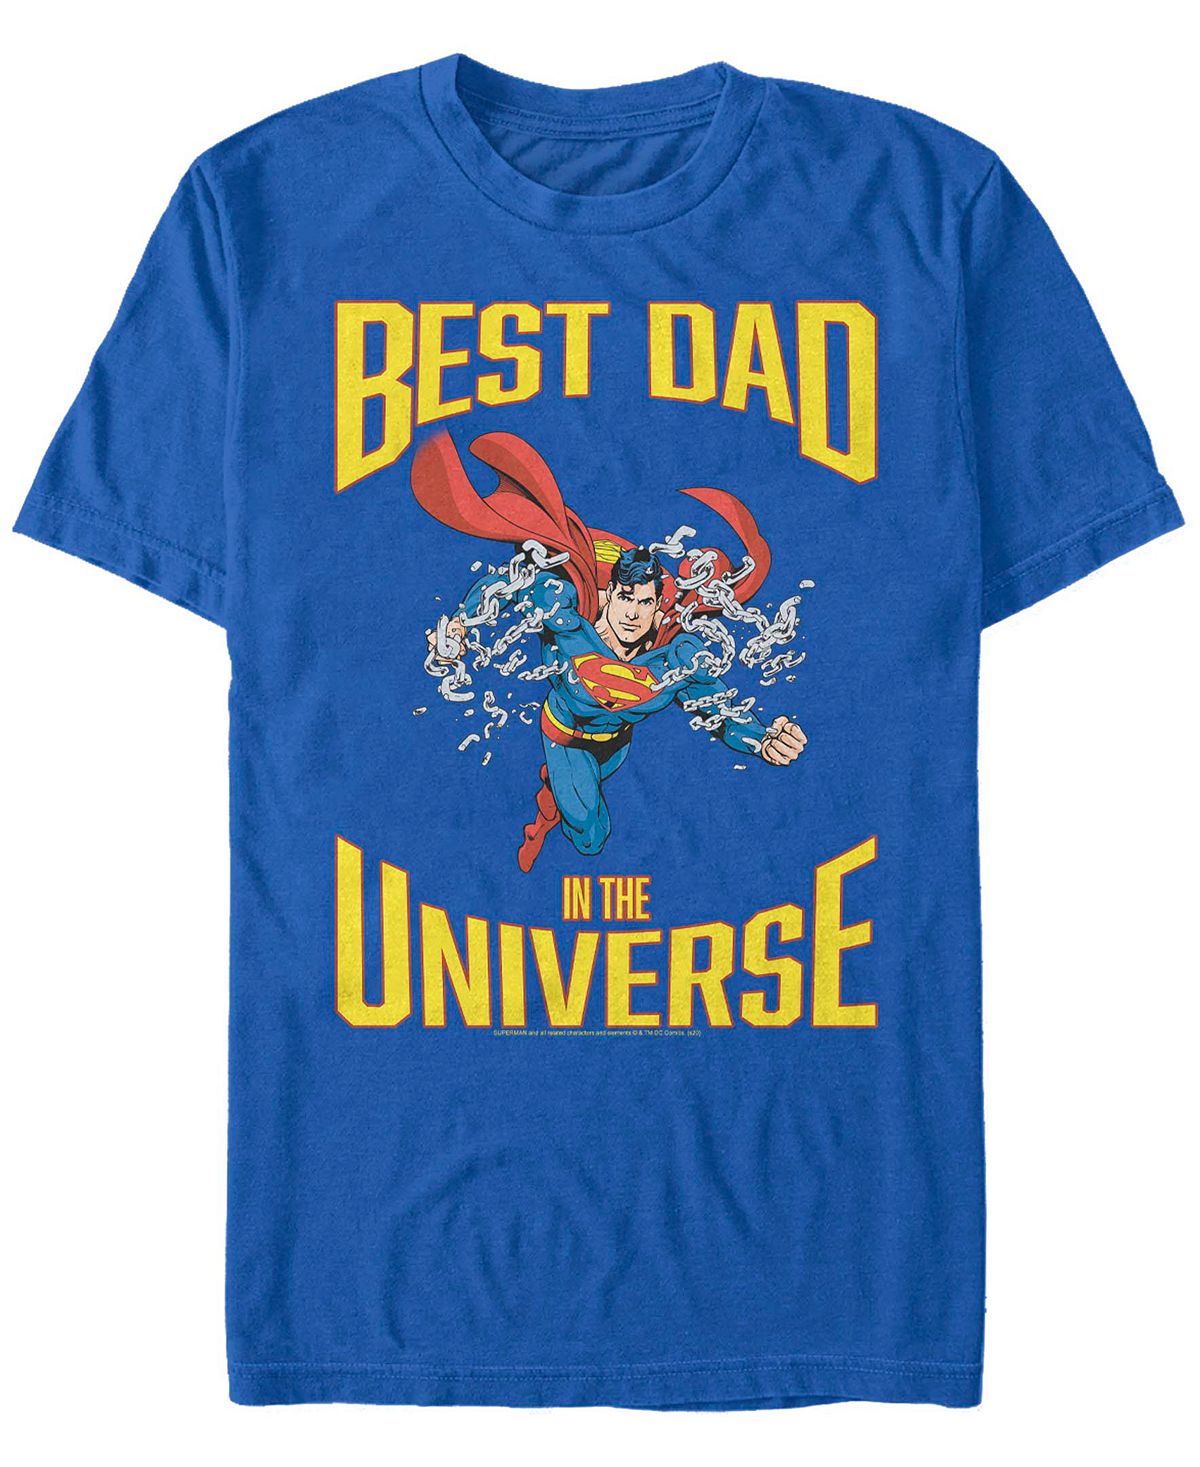 Мужская футболка с коротким рукавом superman super best dad Fifth Sun носки dc comics радужный superman белые